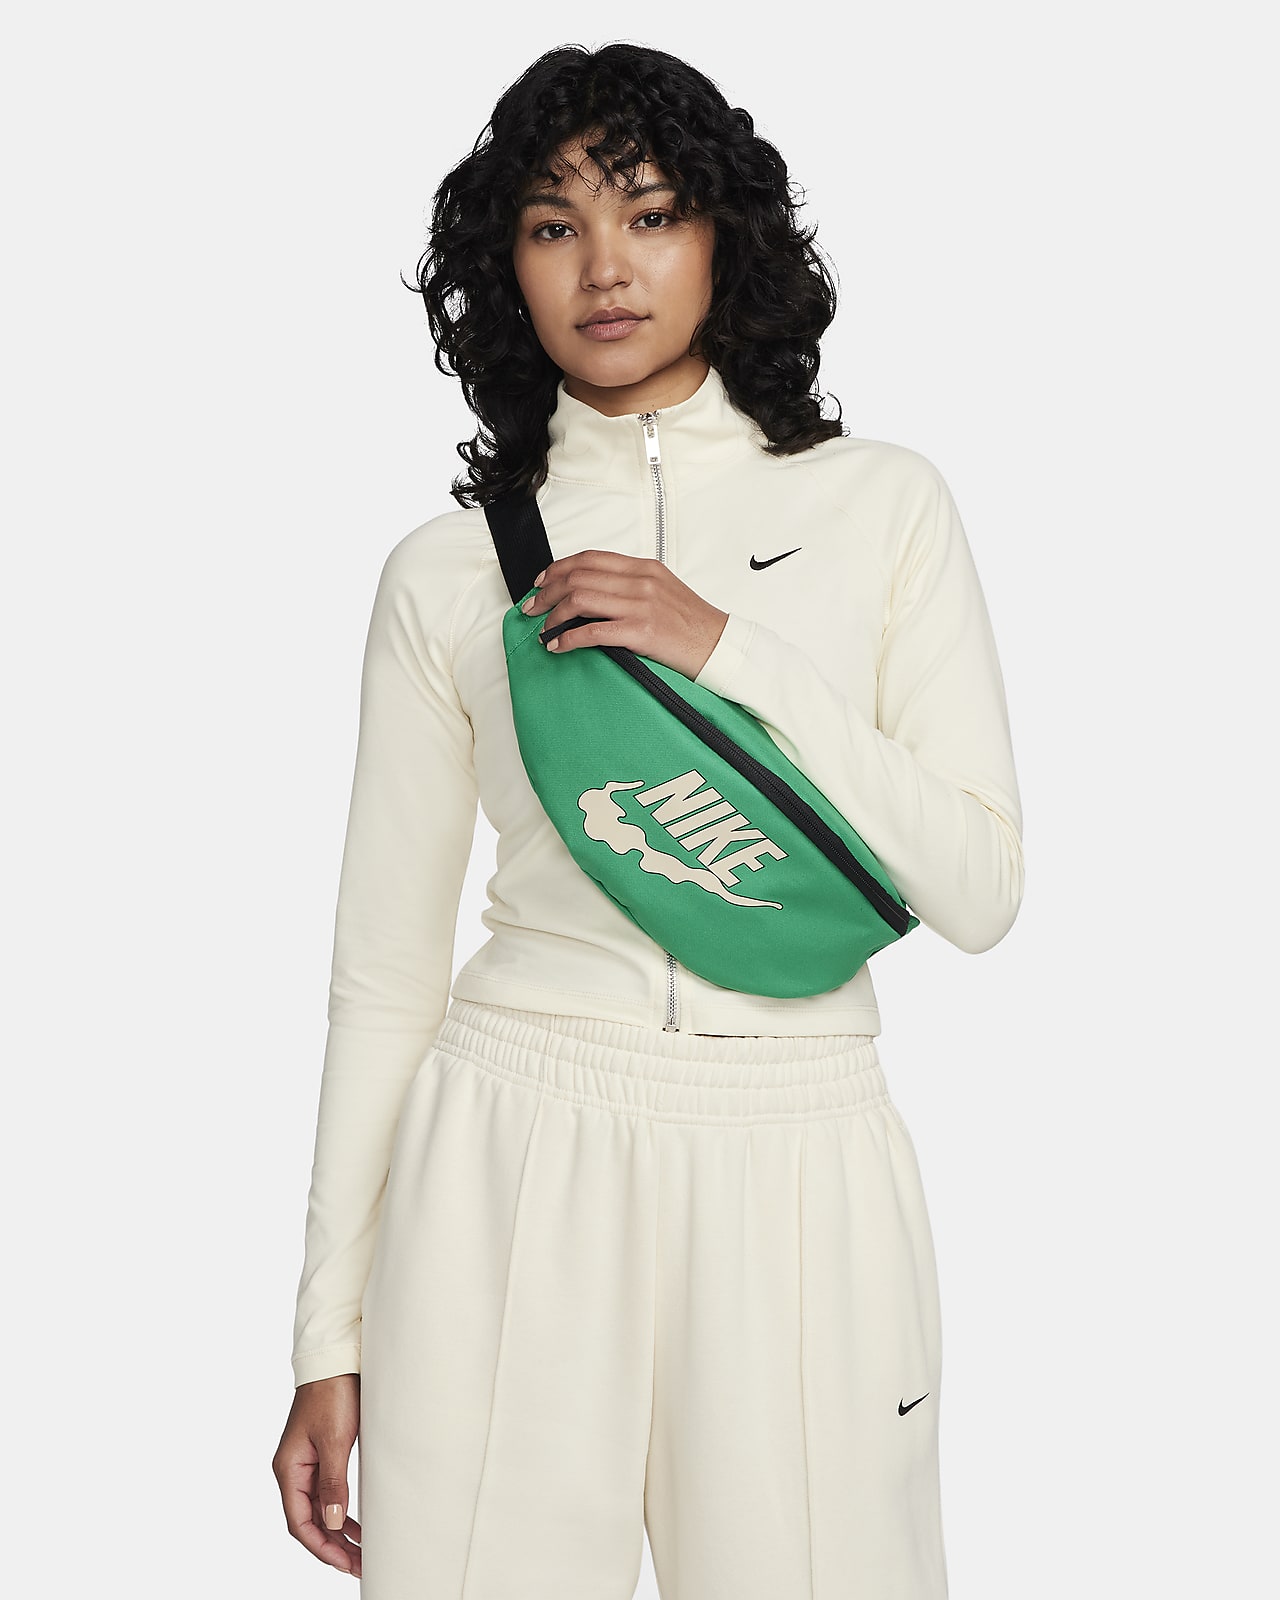 Bolsa de cintura Nike Heritage (3 L)